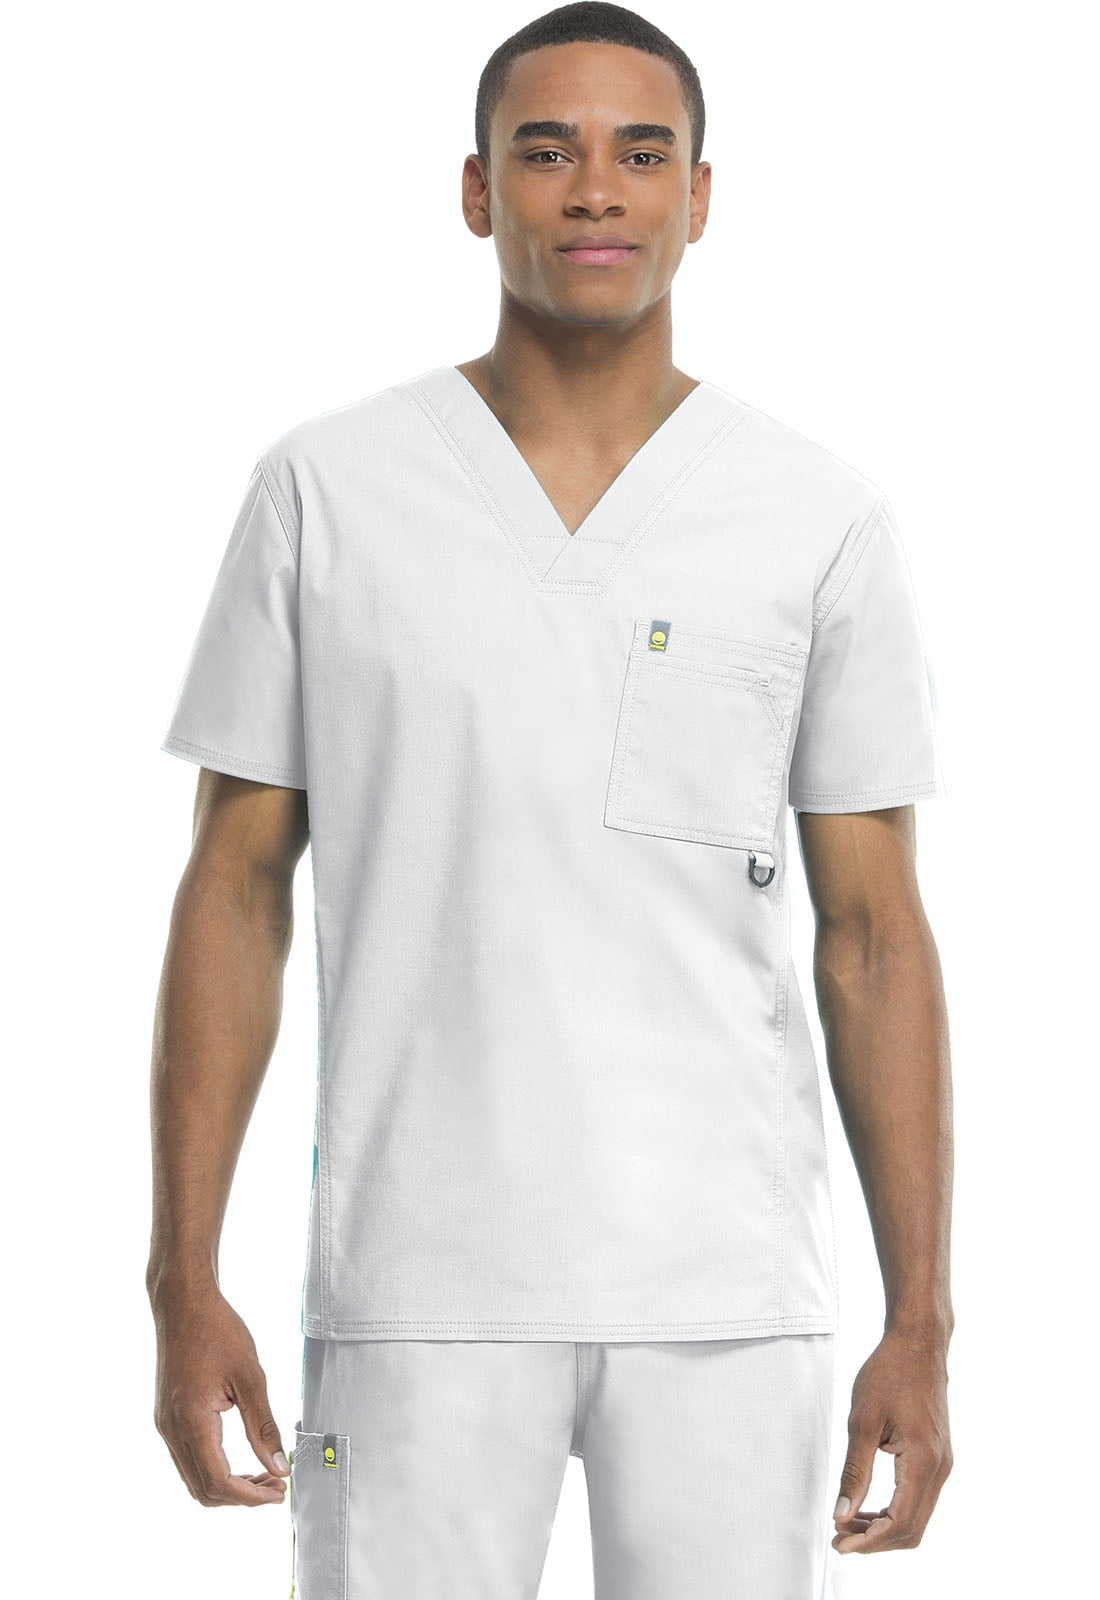 Code Happy Men's Short Sleeve Chest Pocket V Neck Nursing Scrub Top 16600AB 